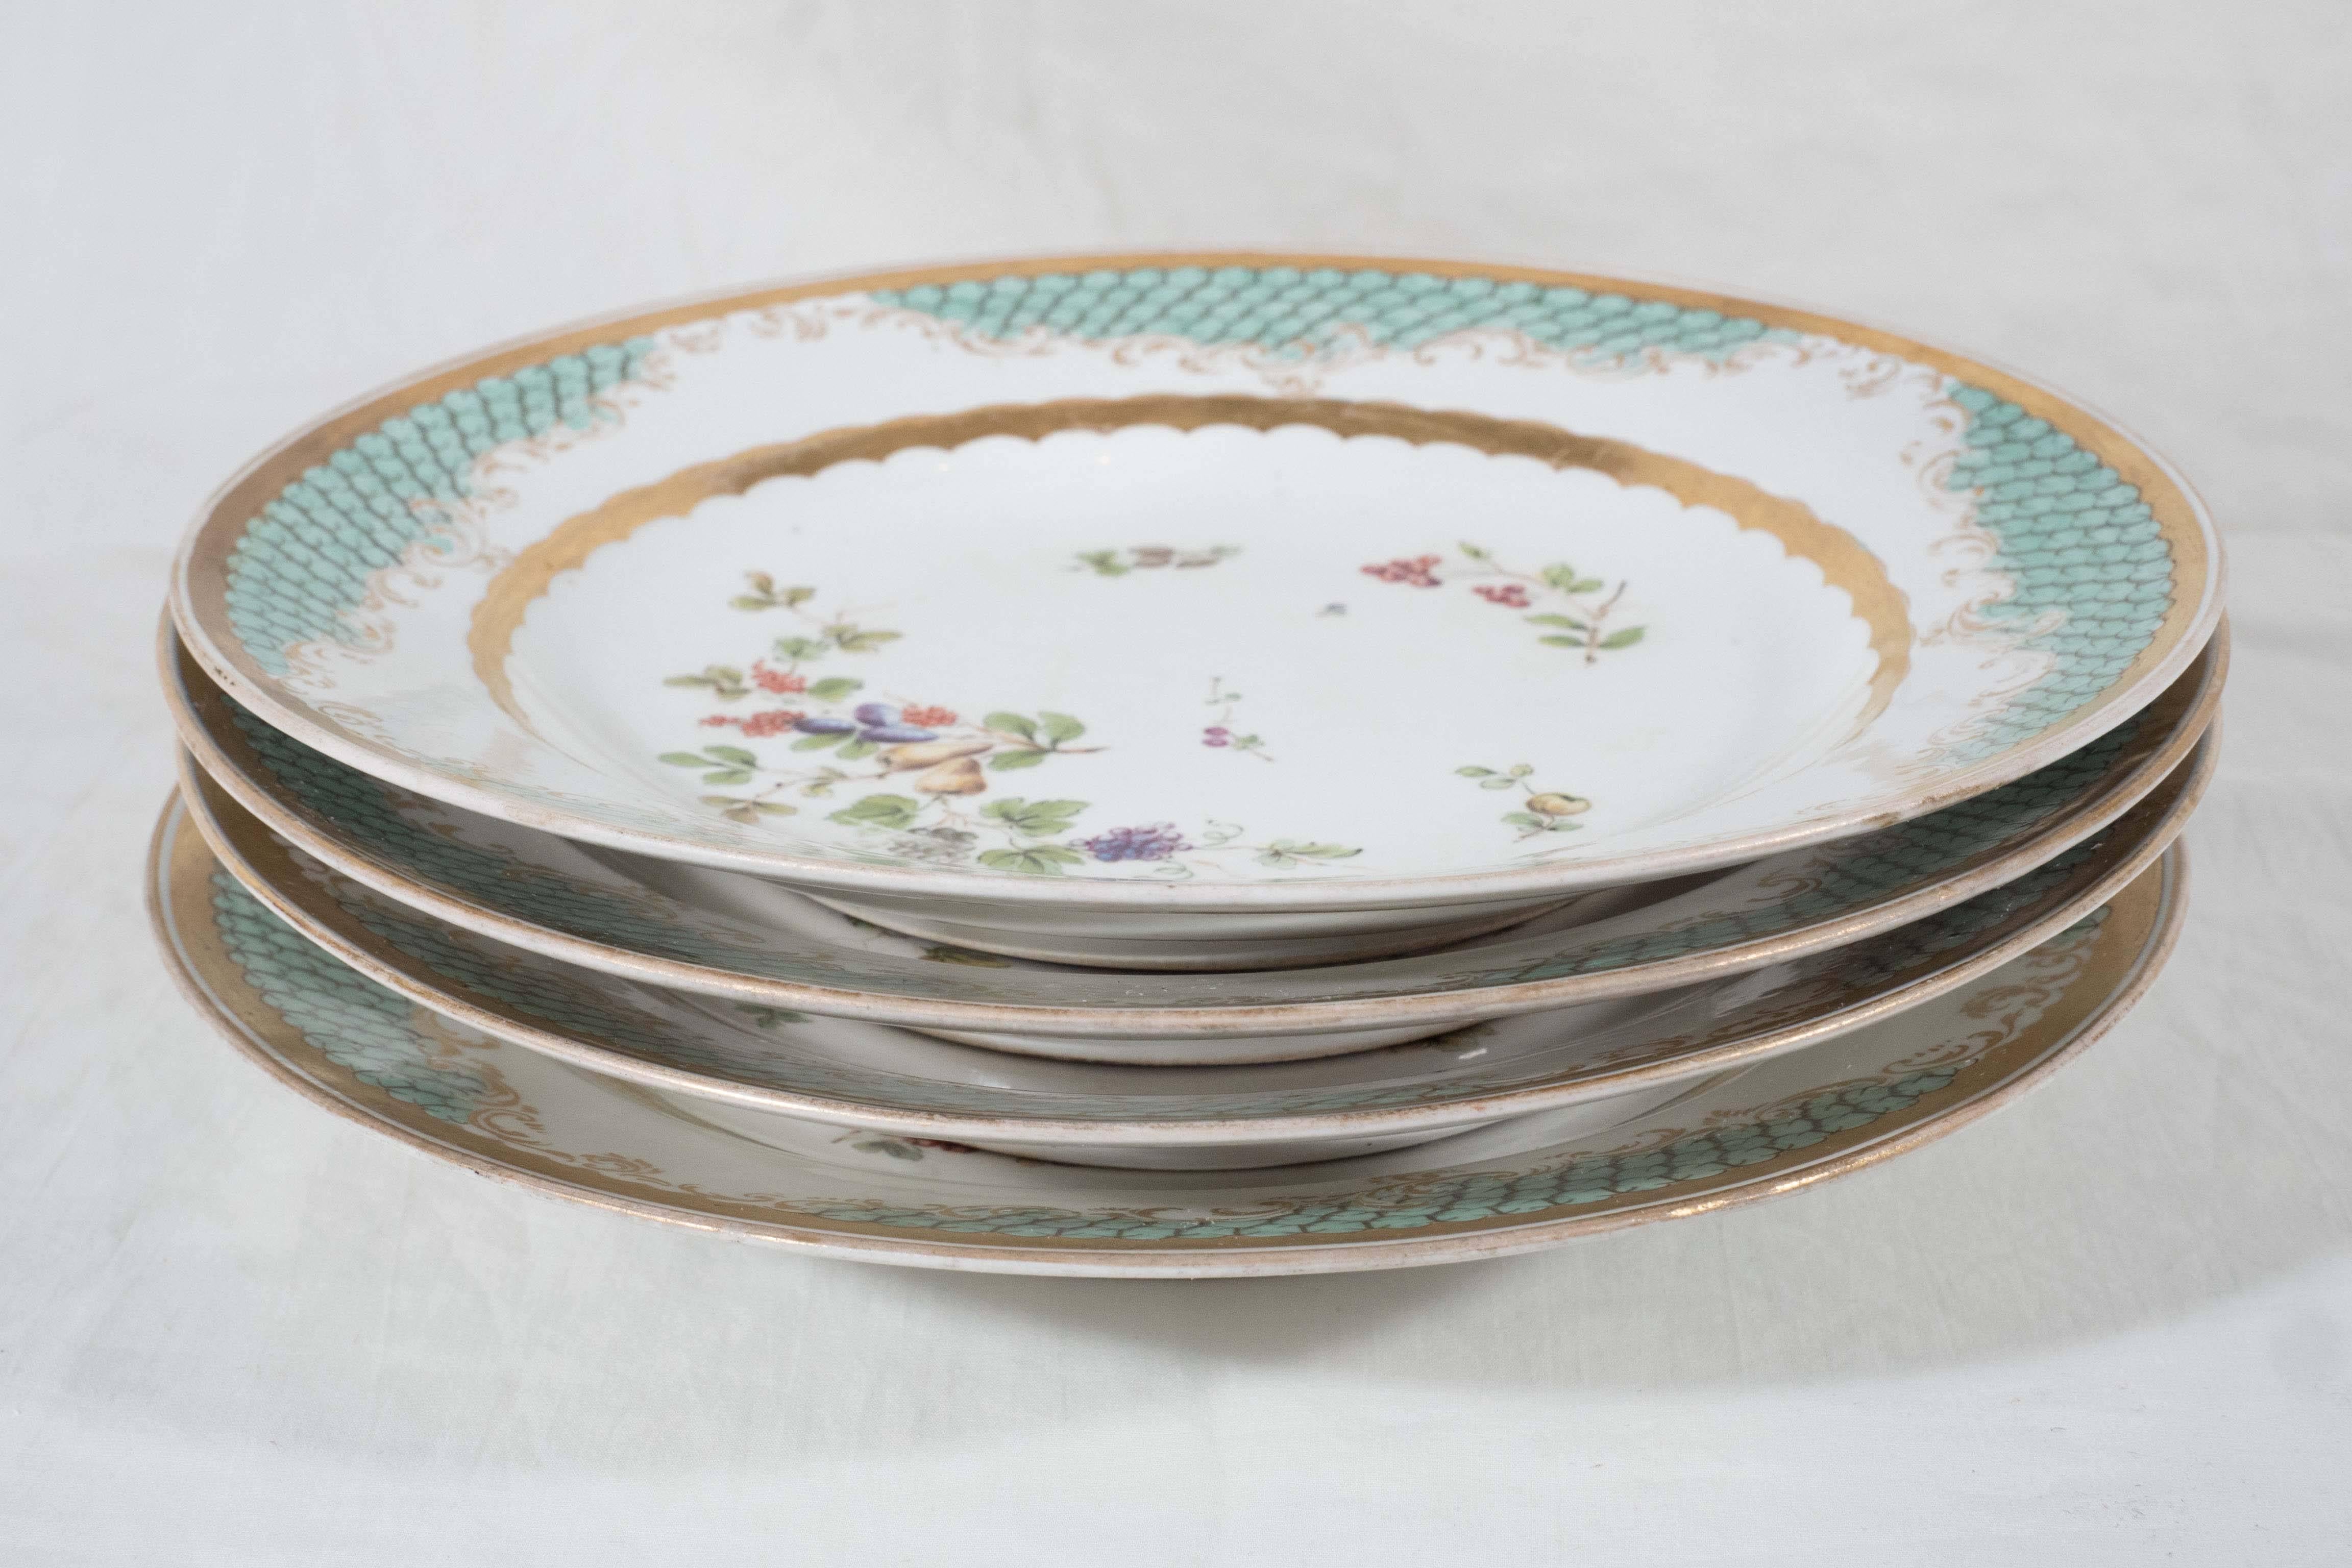 Antique Porcelain Dishes, a Set of 11 Imperial Vienna Porcelain Plates 3